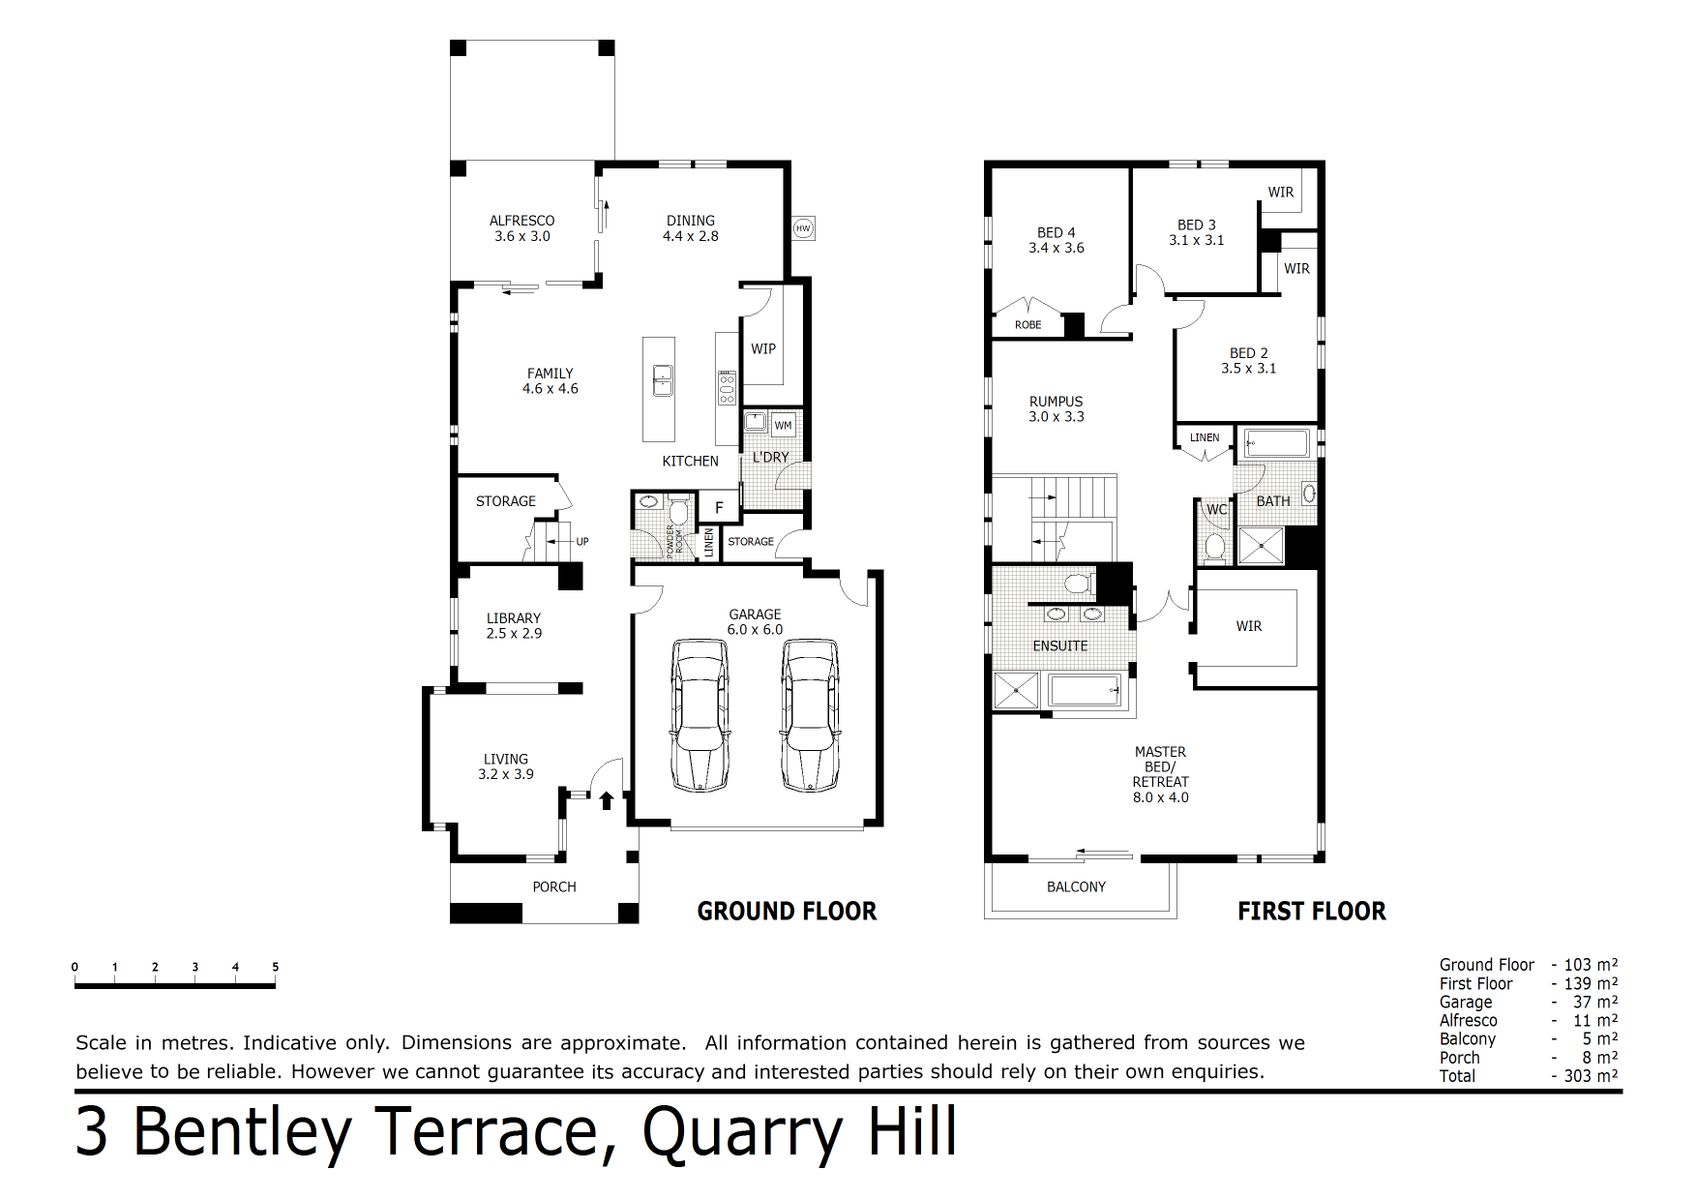 3 Bentley Terrace Quarry Hill (24 OCT 2019) 279sqm